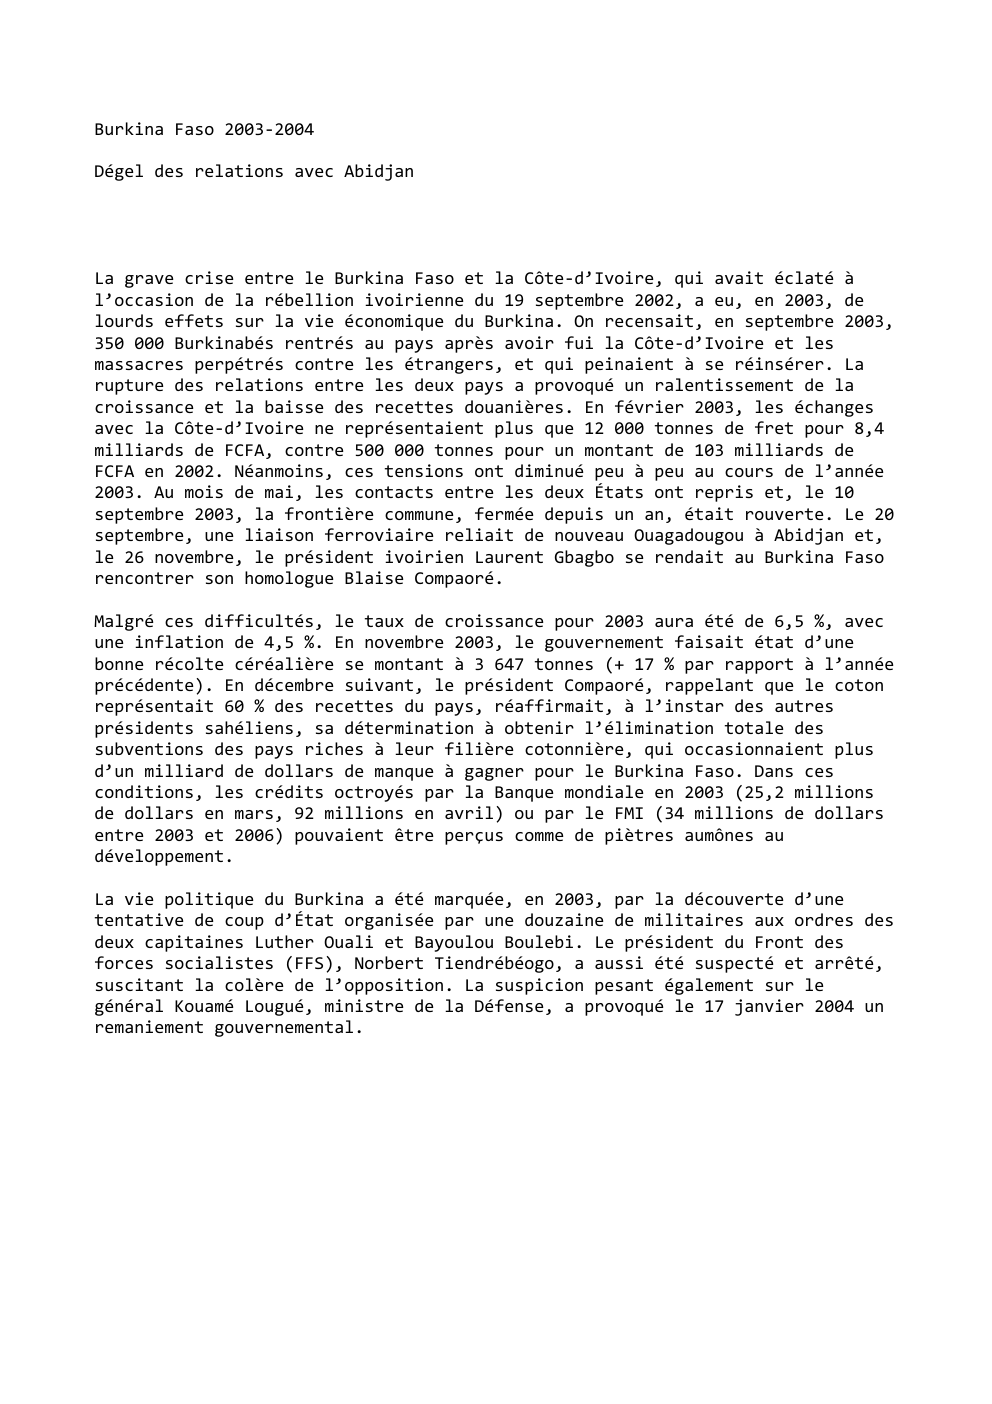 Prévisualisation du document Burkina Faso 2003-2004
Dégel des relations avec Abidjan

La grave crise entre le Burkina Faso et la Côte-d’Ivoire, qui avait...